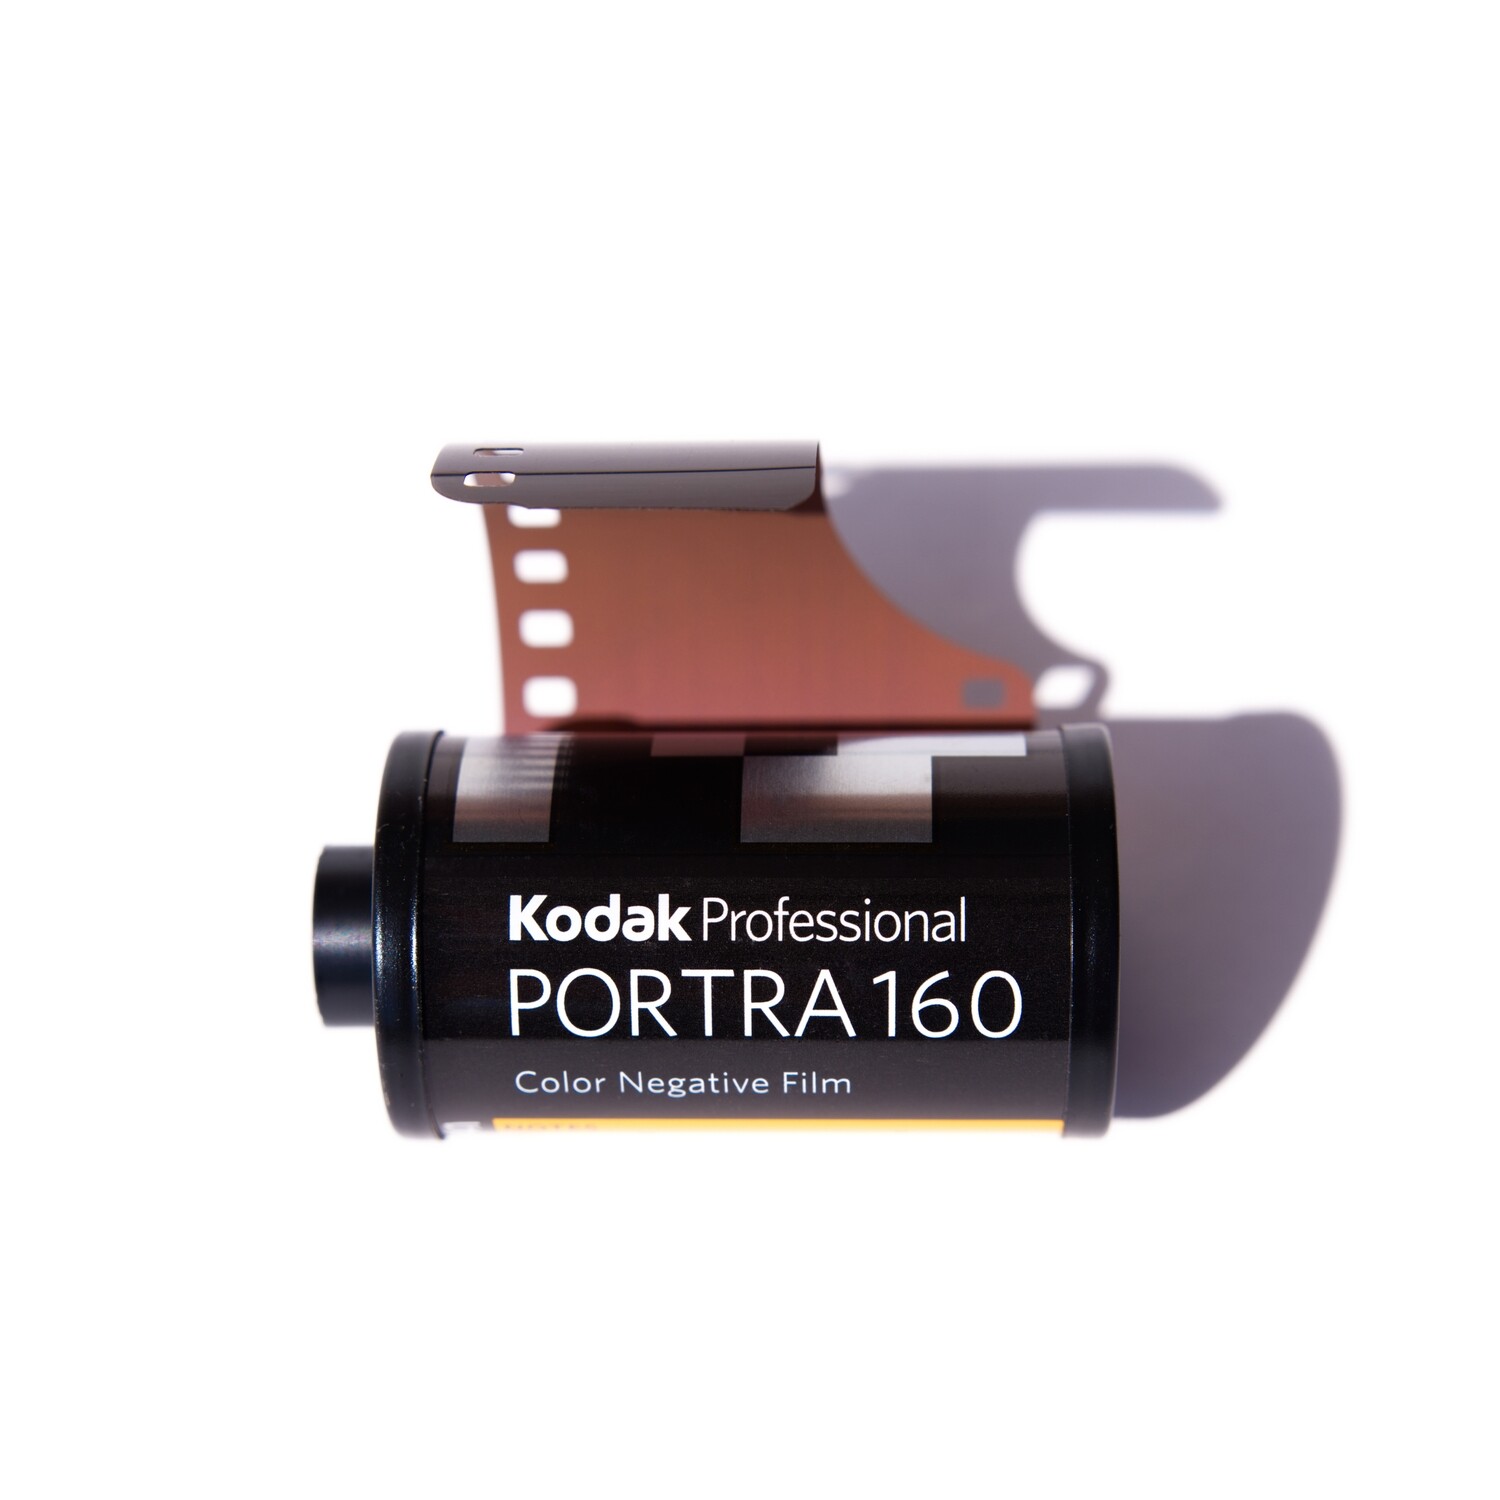 Kodak Professional Portra 160 35mm